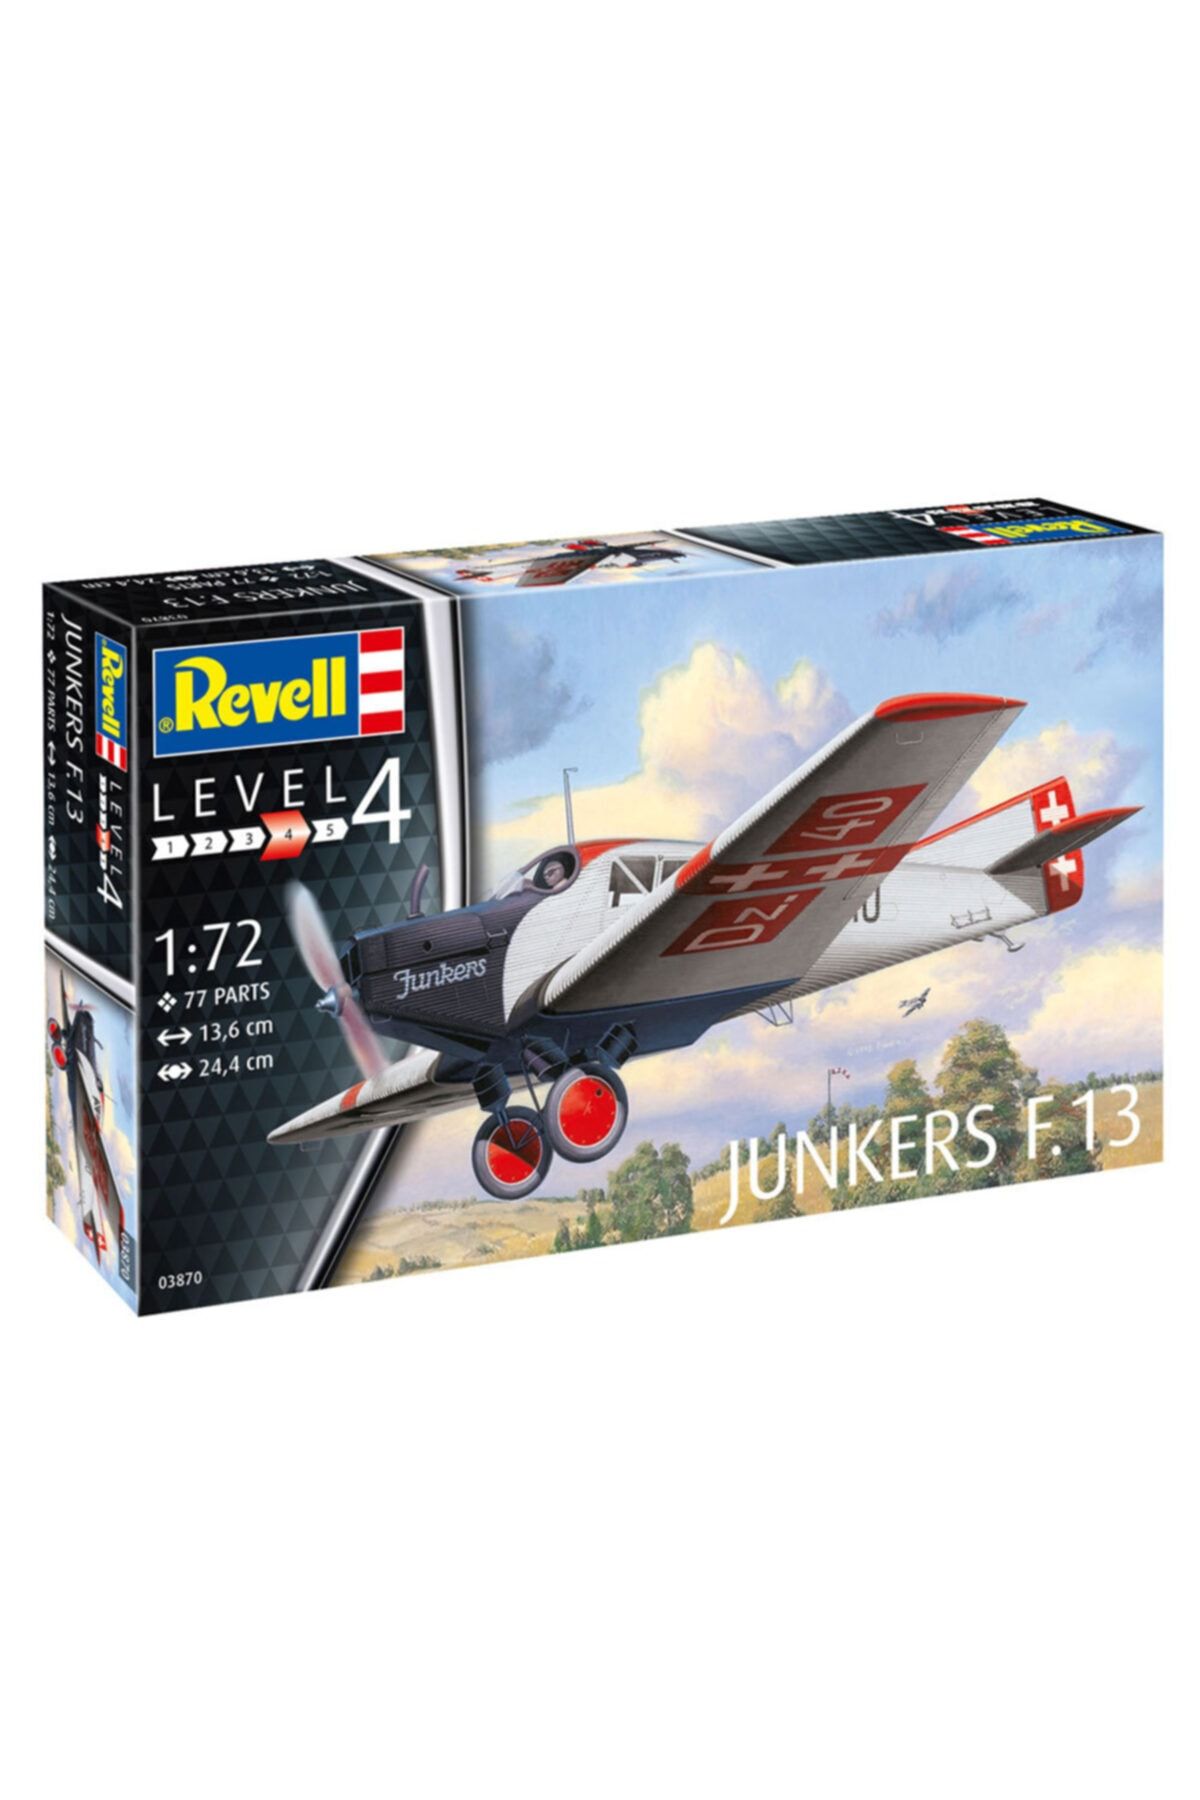 REVELL Maket Junkers F 13 vsu03870